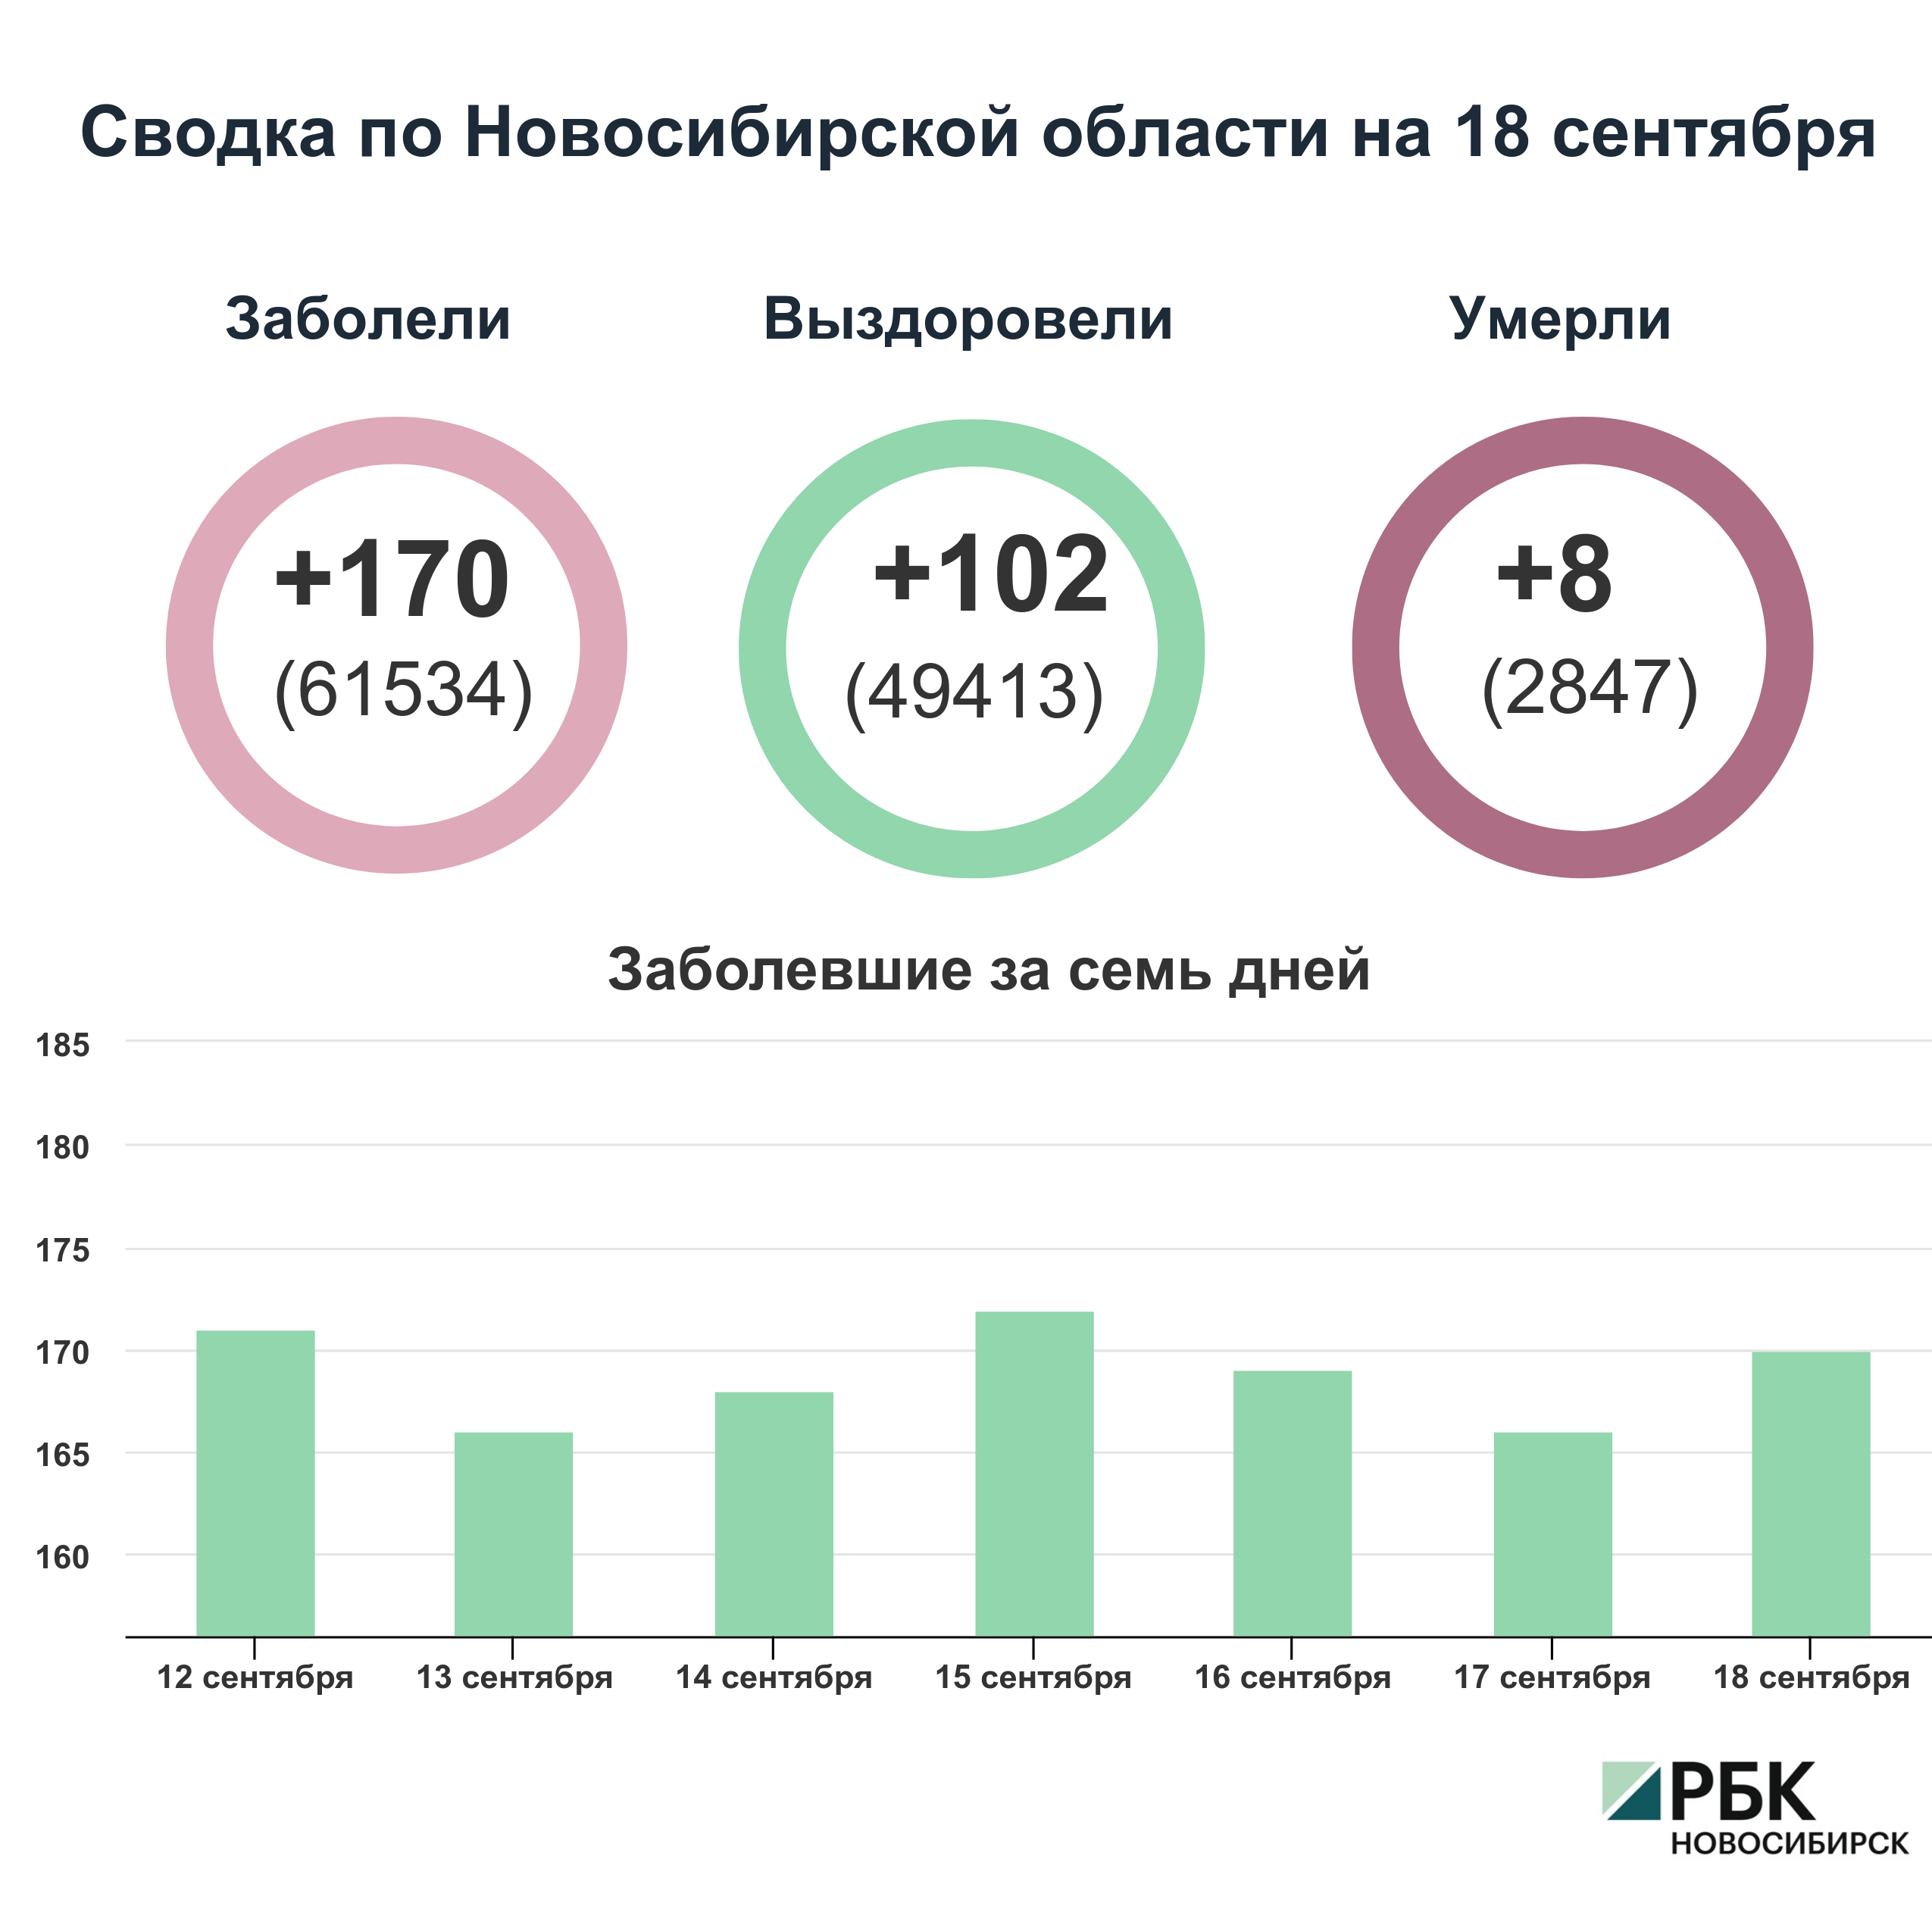 Коронавирус в Новосибирске: сводка на 18 сентября